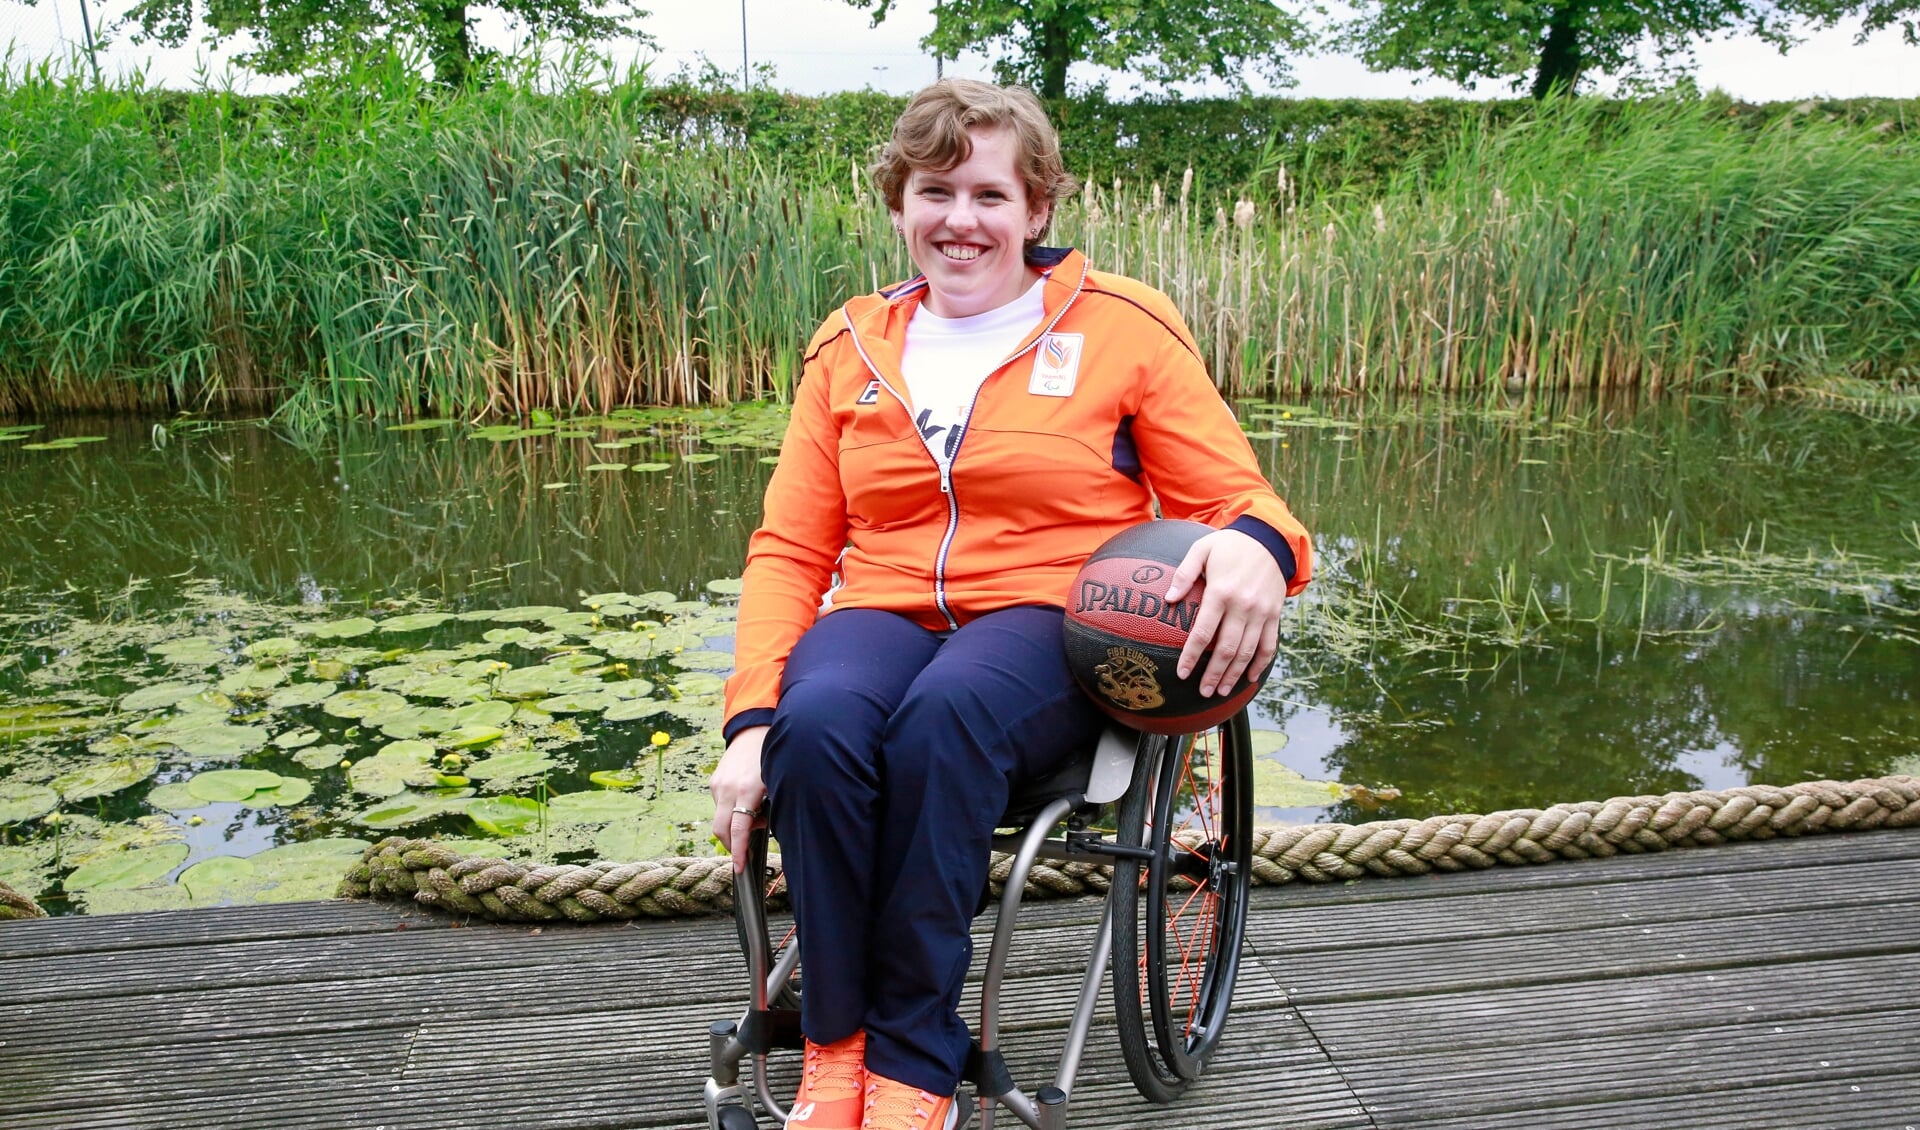 Voor rolstoelbasketbalster Lindsay Frelink komt een grote droom uit: binnenkort schittert ze met de Nederlandse ploeg op de Paralympics in Tokio.